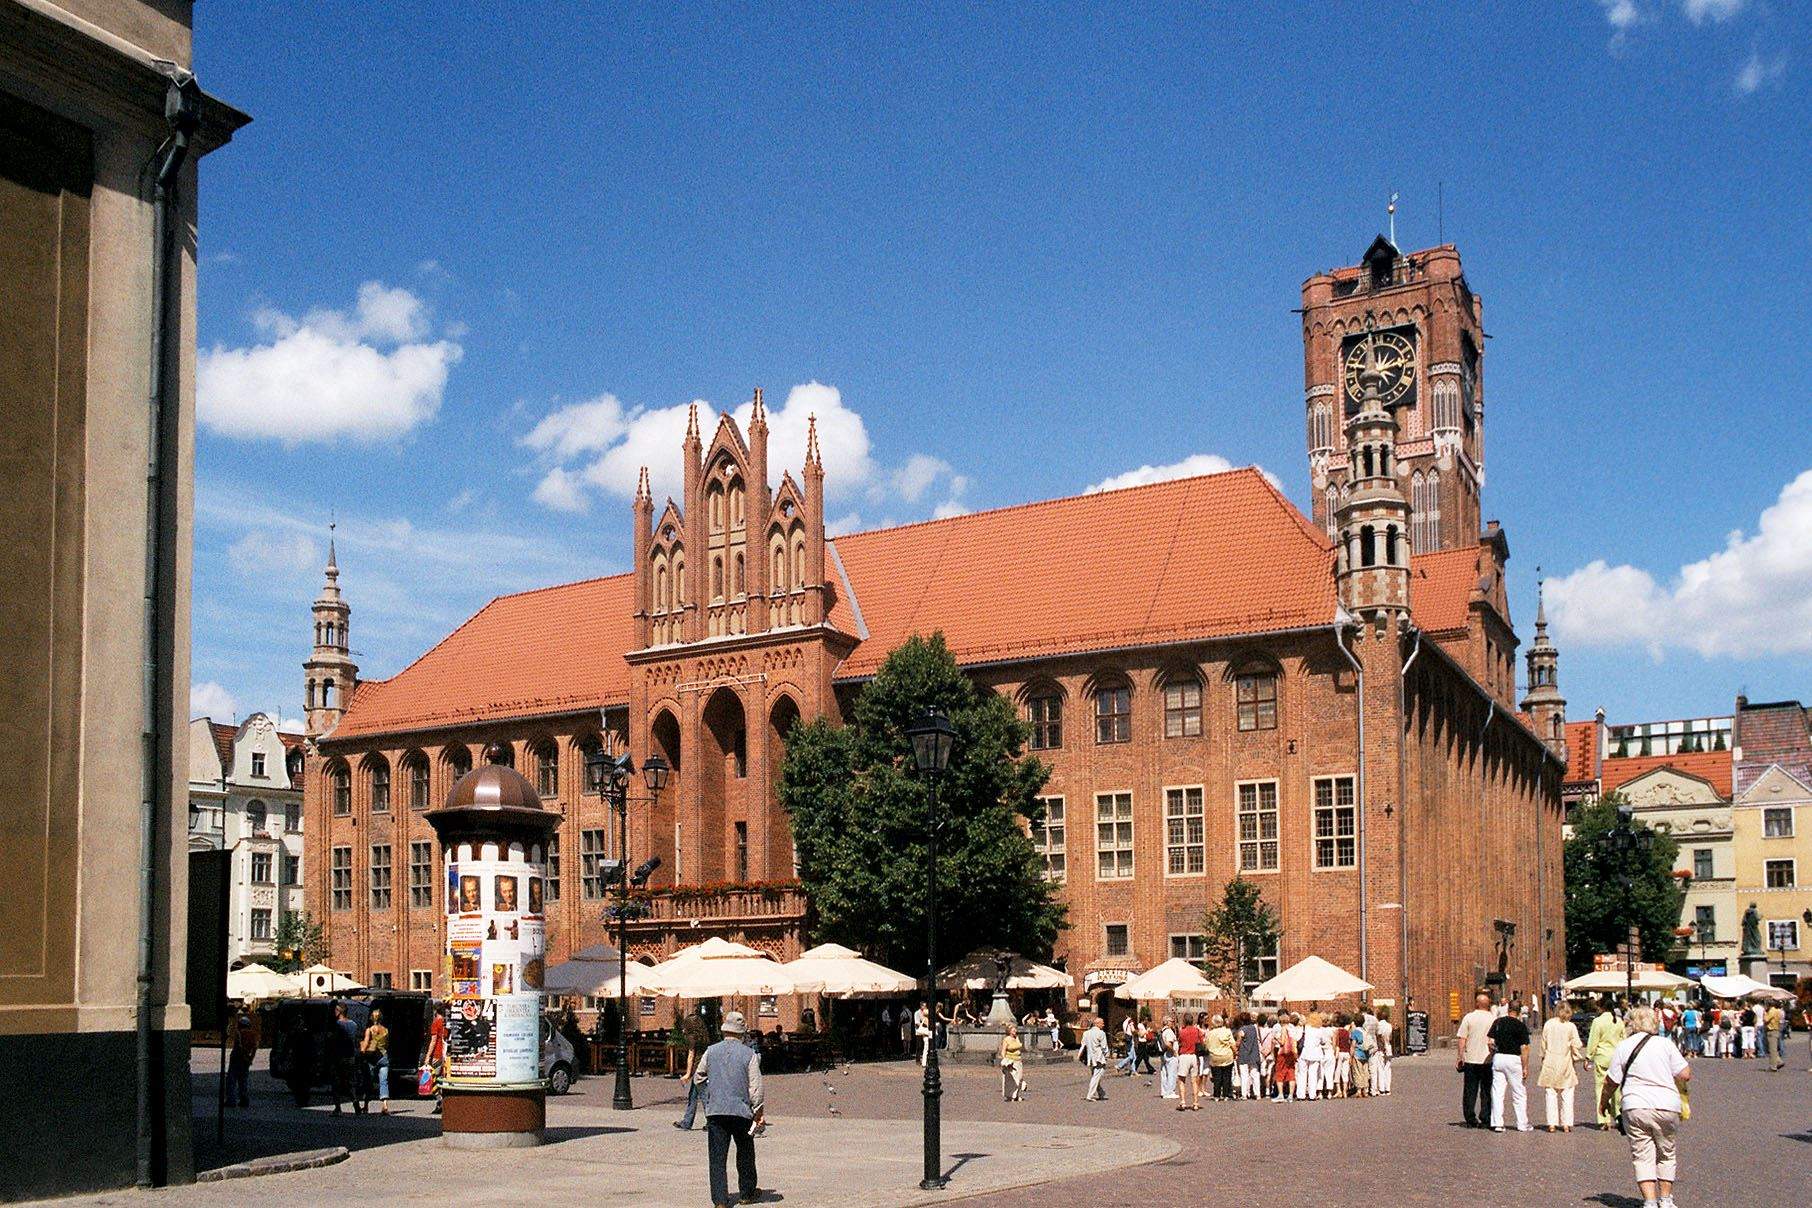 Tòa thị chính của Torun được xây dựng từ thế kỷ XIII là một trong những tòa thị chính vĩ đại nhất ở Trung Âu